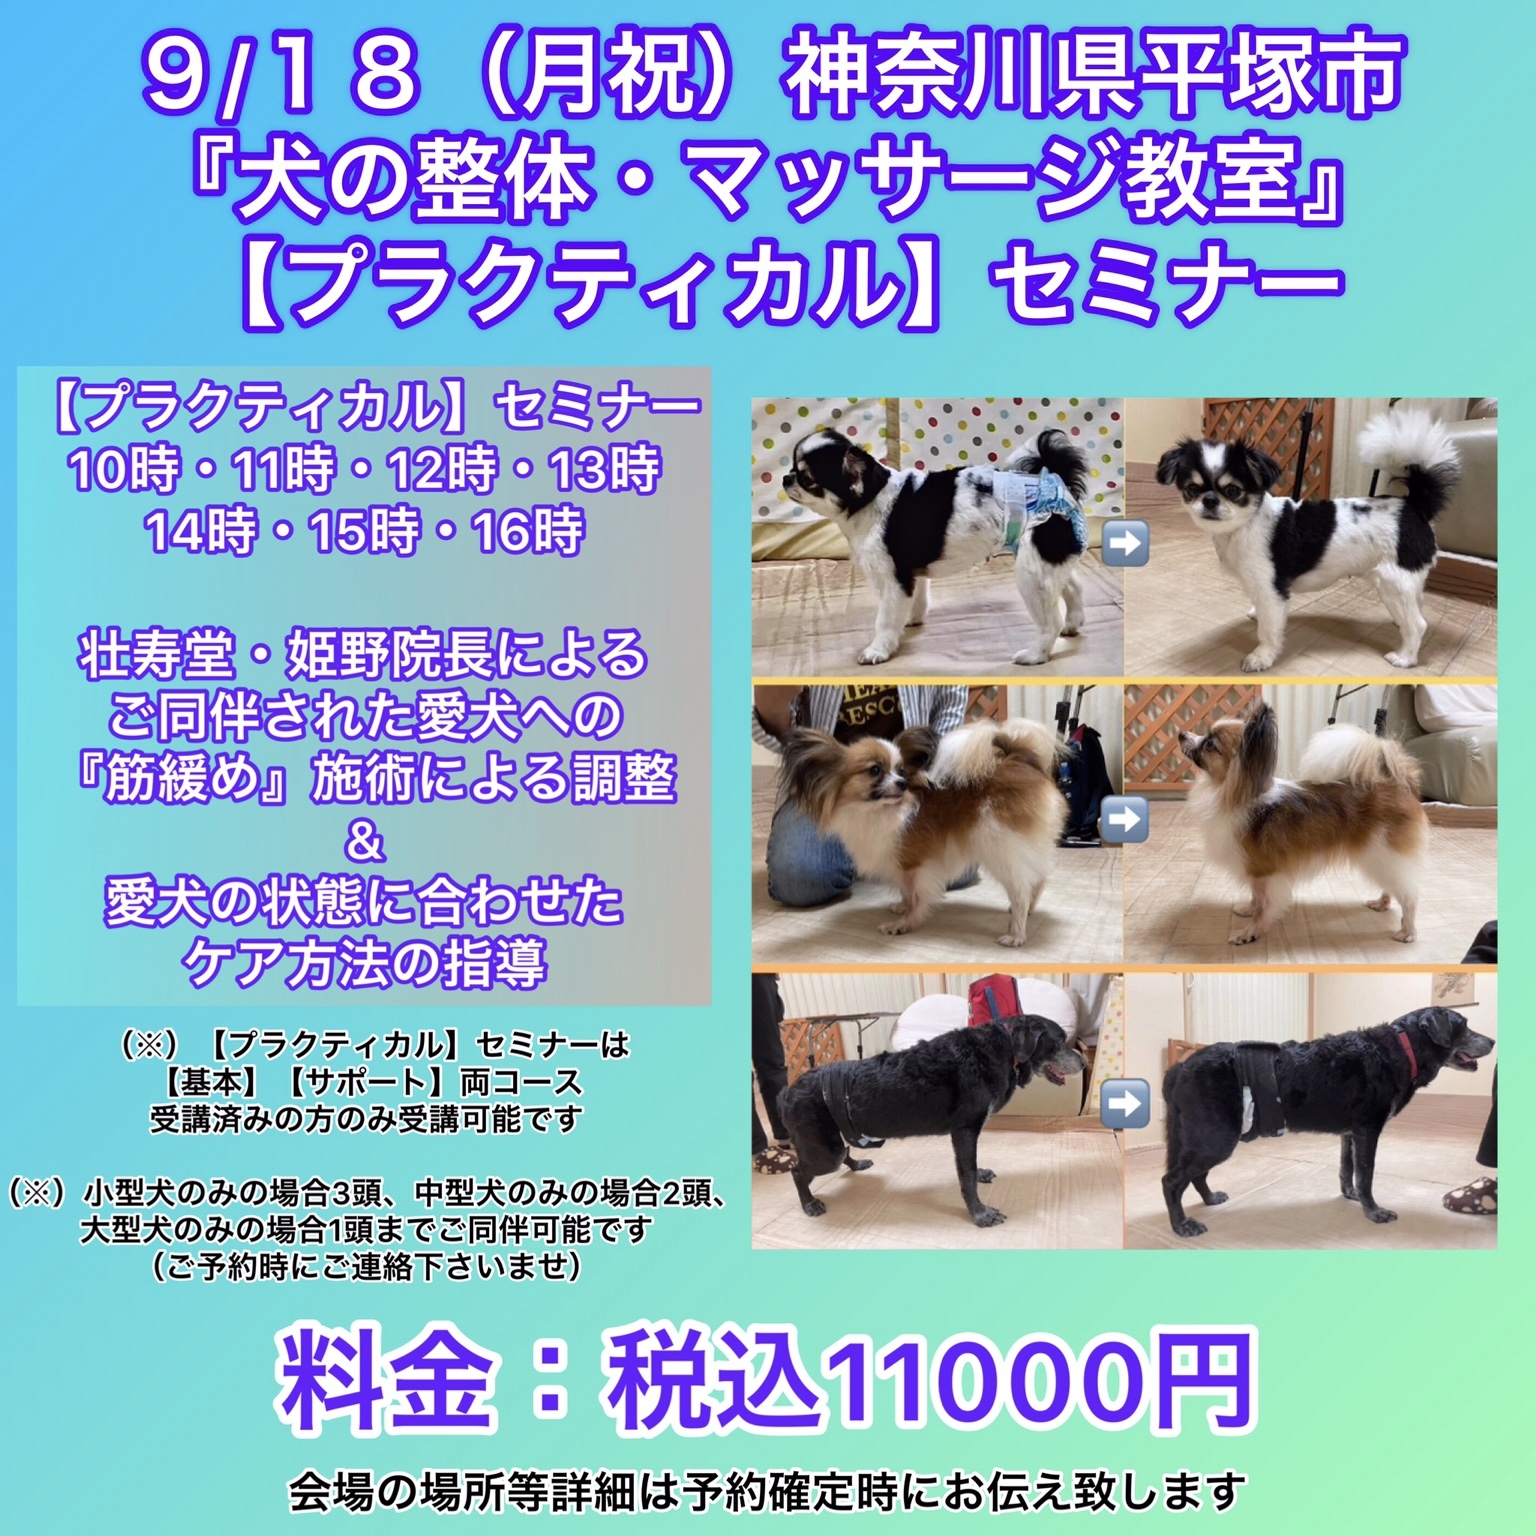 神奈川県犬の整体マッサージセミナーにご参加された愛犬さん達